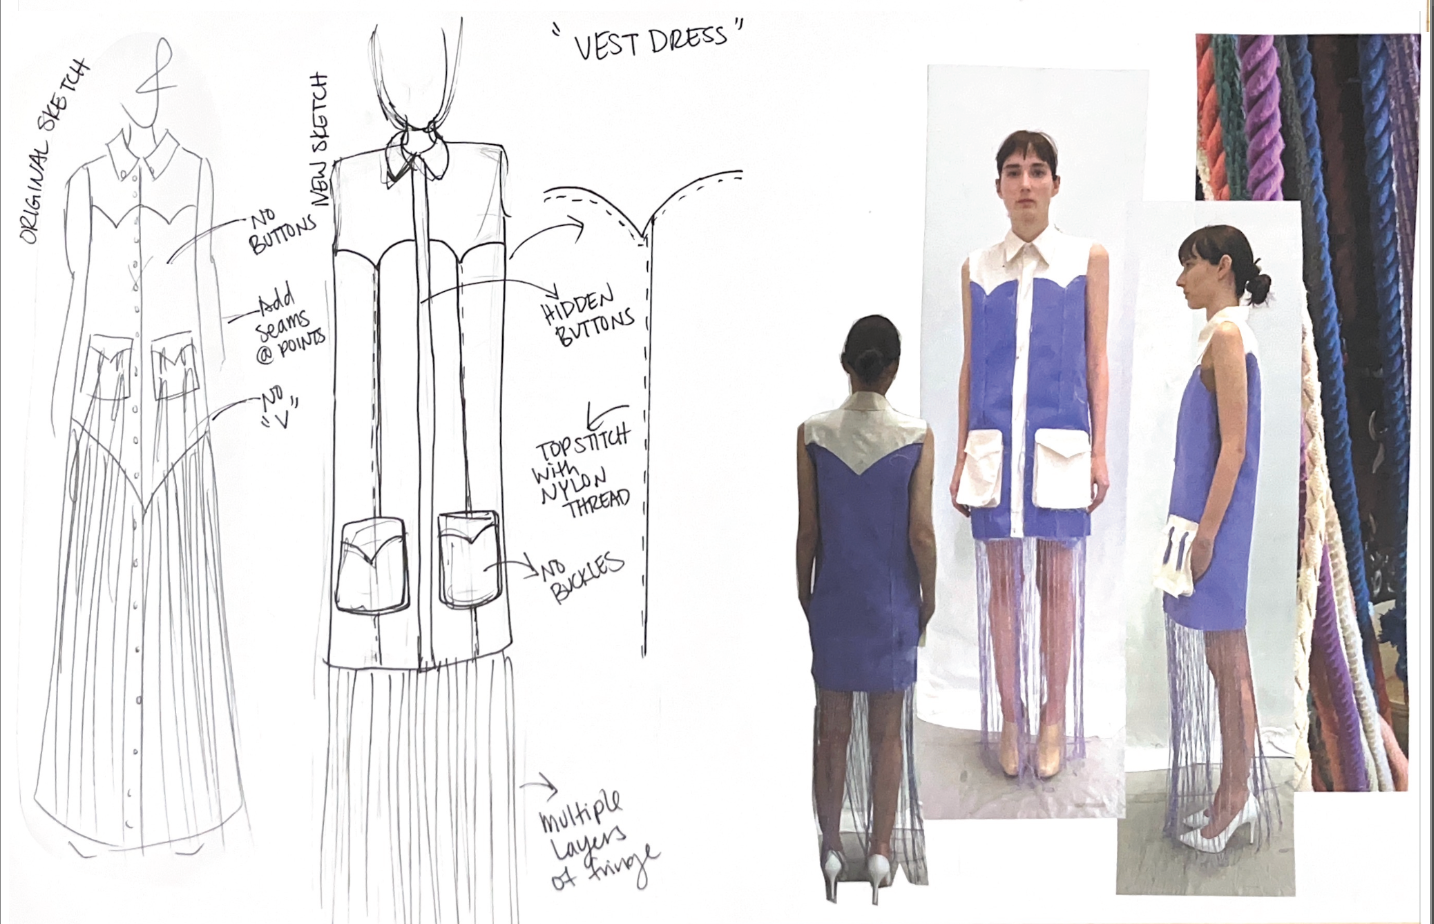 Look 3 "Vest Dress": Development 